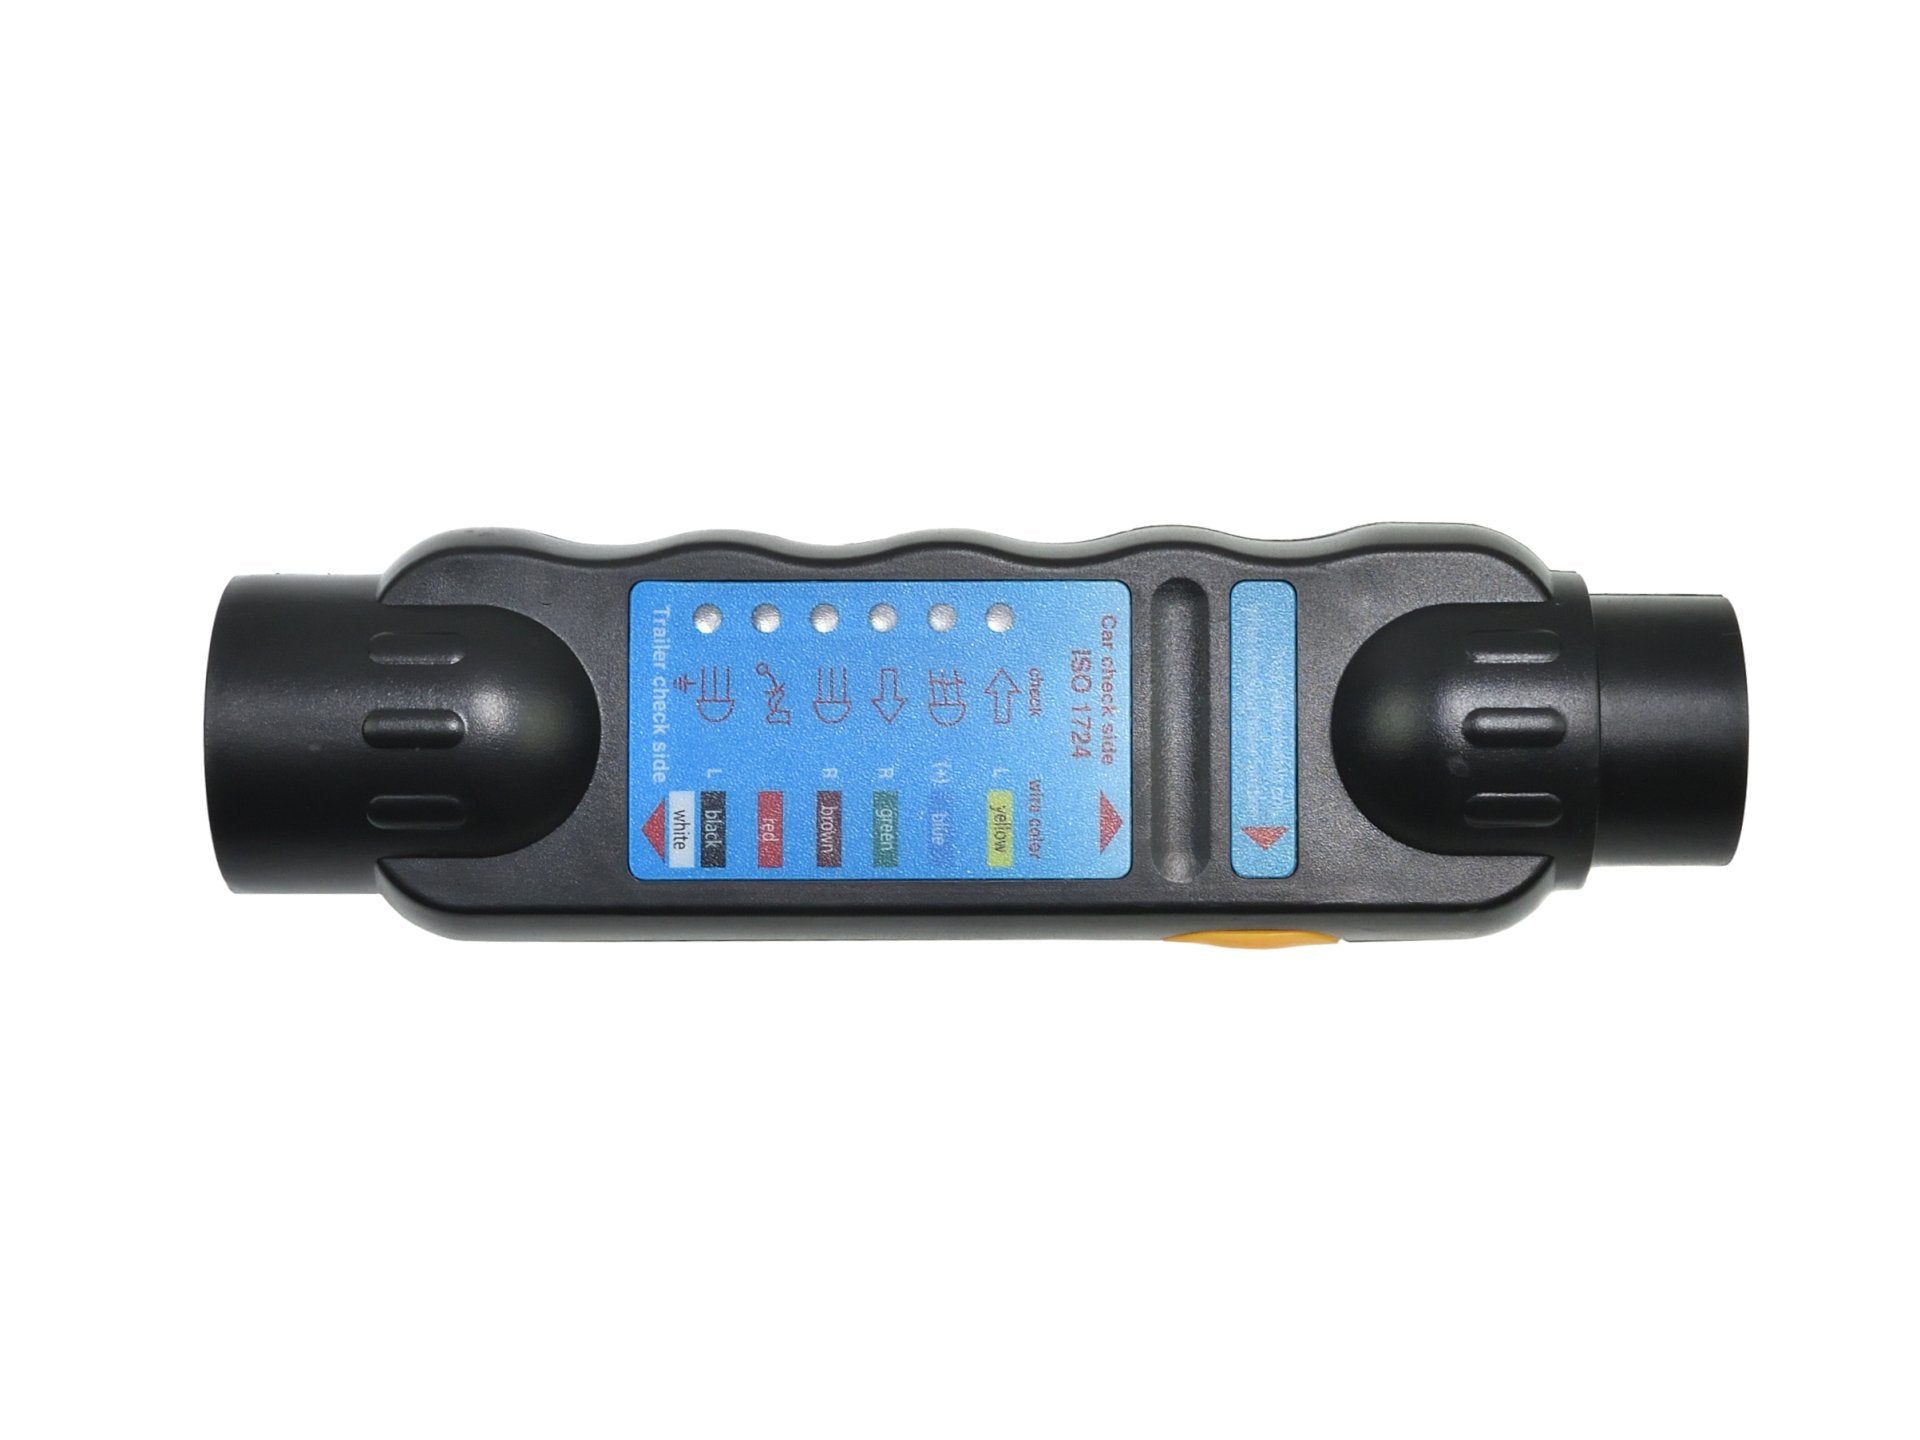 Biltilhenger slepelystester med adaptere, 12v plugg og stikkontakt 7 - 13 pins - spo-cs-deaktivert - spo-default - spo-di